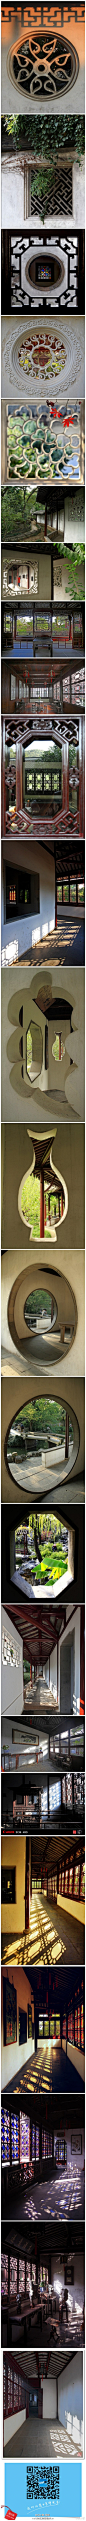 苏州园林那美丽的窗户：苏州园林花窗不仅是一种景观，也是苏州文人园林文化的反映。如果把苏州园林比做一首诗的话，那么，花窗就是诗人的眼睛。Via：设计联-图库